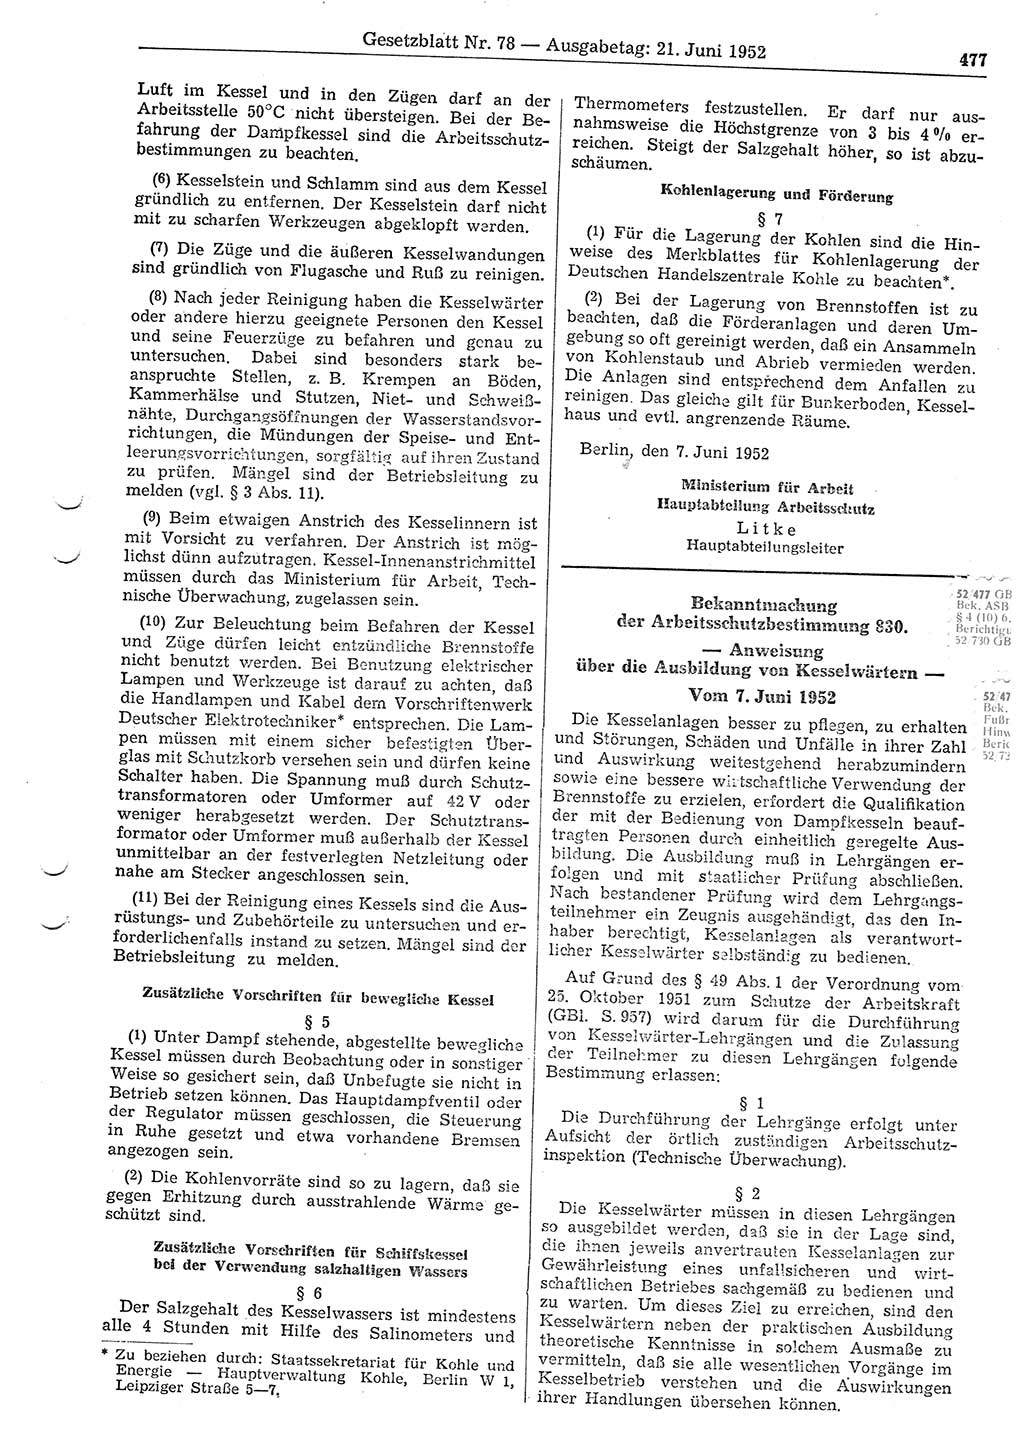 Gesetzblatt (GBl.) der Deutschen Demokratischen Republik (DDR) 1952, Seite 477 (GBl. DDR 1952, S. 477)